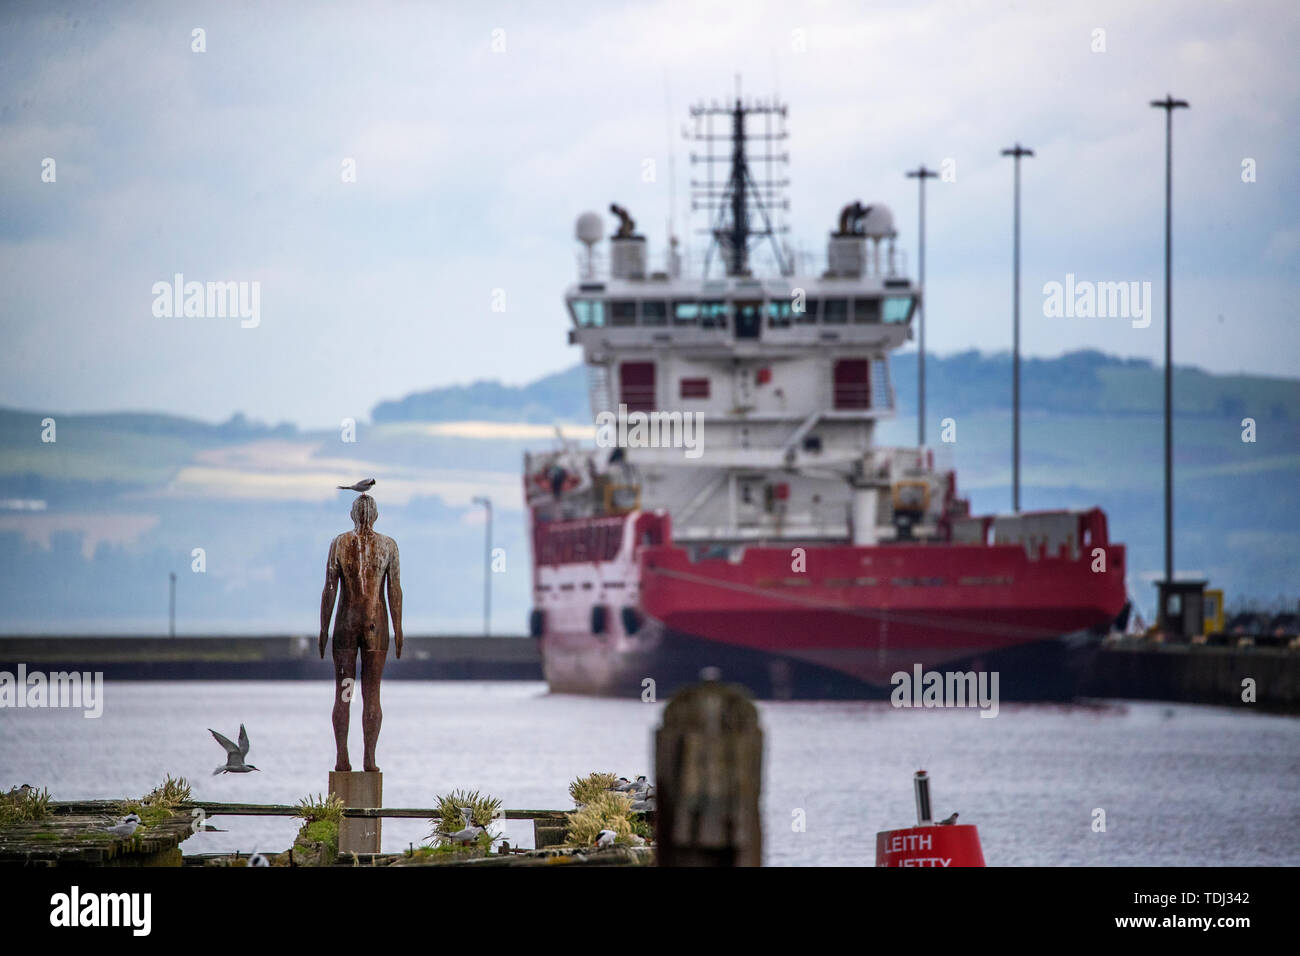 "Leith Docks Man' uno di sei dimensioni reali figure di ferro per artista Antony Gormley che fa parte dell'installazione '6 volte' che segna un percorso acquatico lungo Edimburgo di acqua di Leith dallo Scottish Galleria Nazionale di Arte Moderna a mare a Leith Docks. Foto Stock